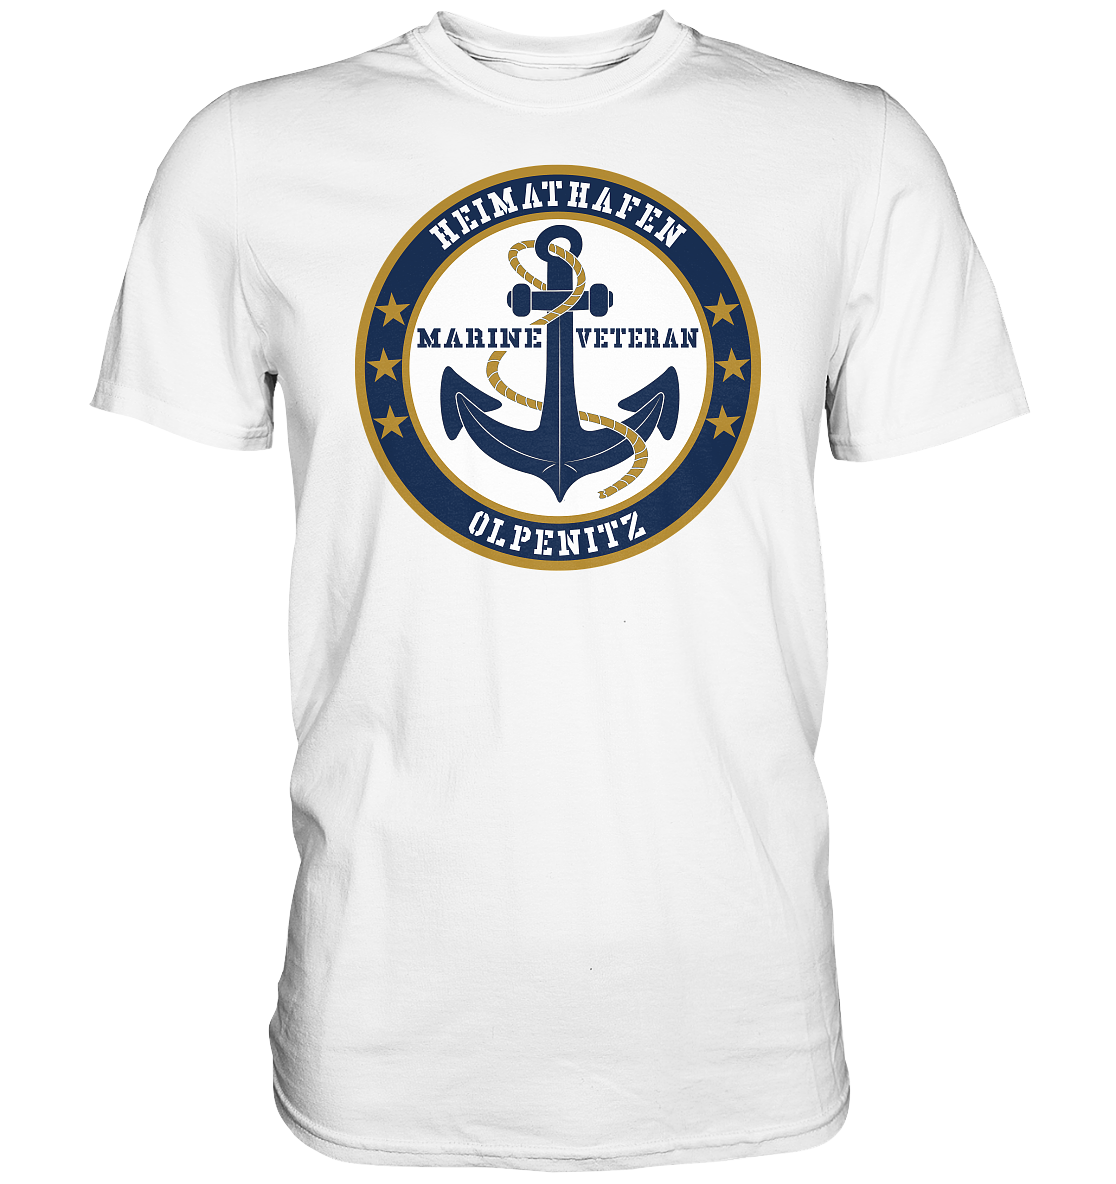 Marine Veteran Heimathafen OLPENITZ - Premium Shirt